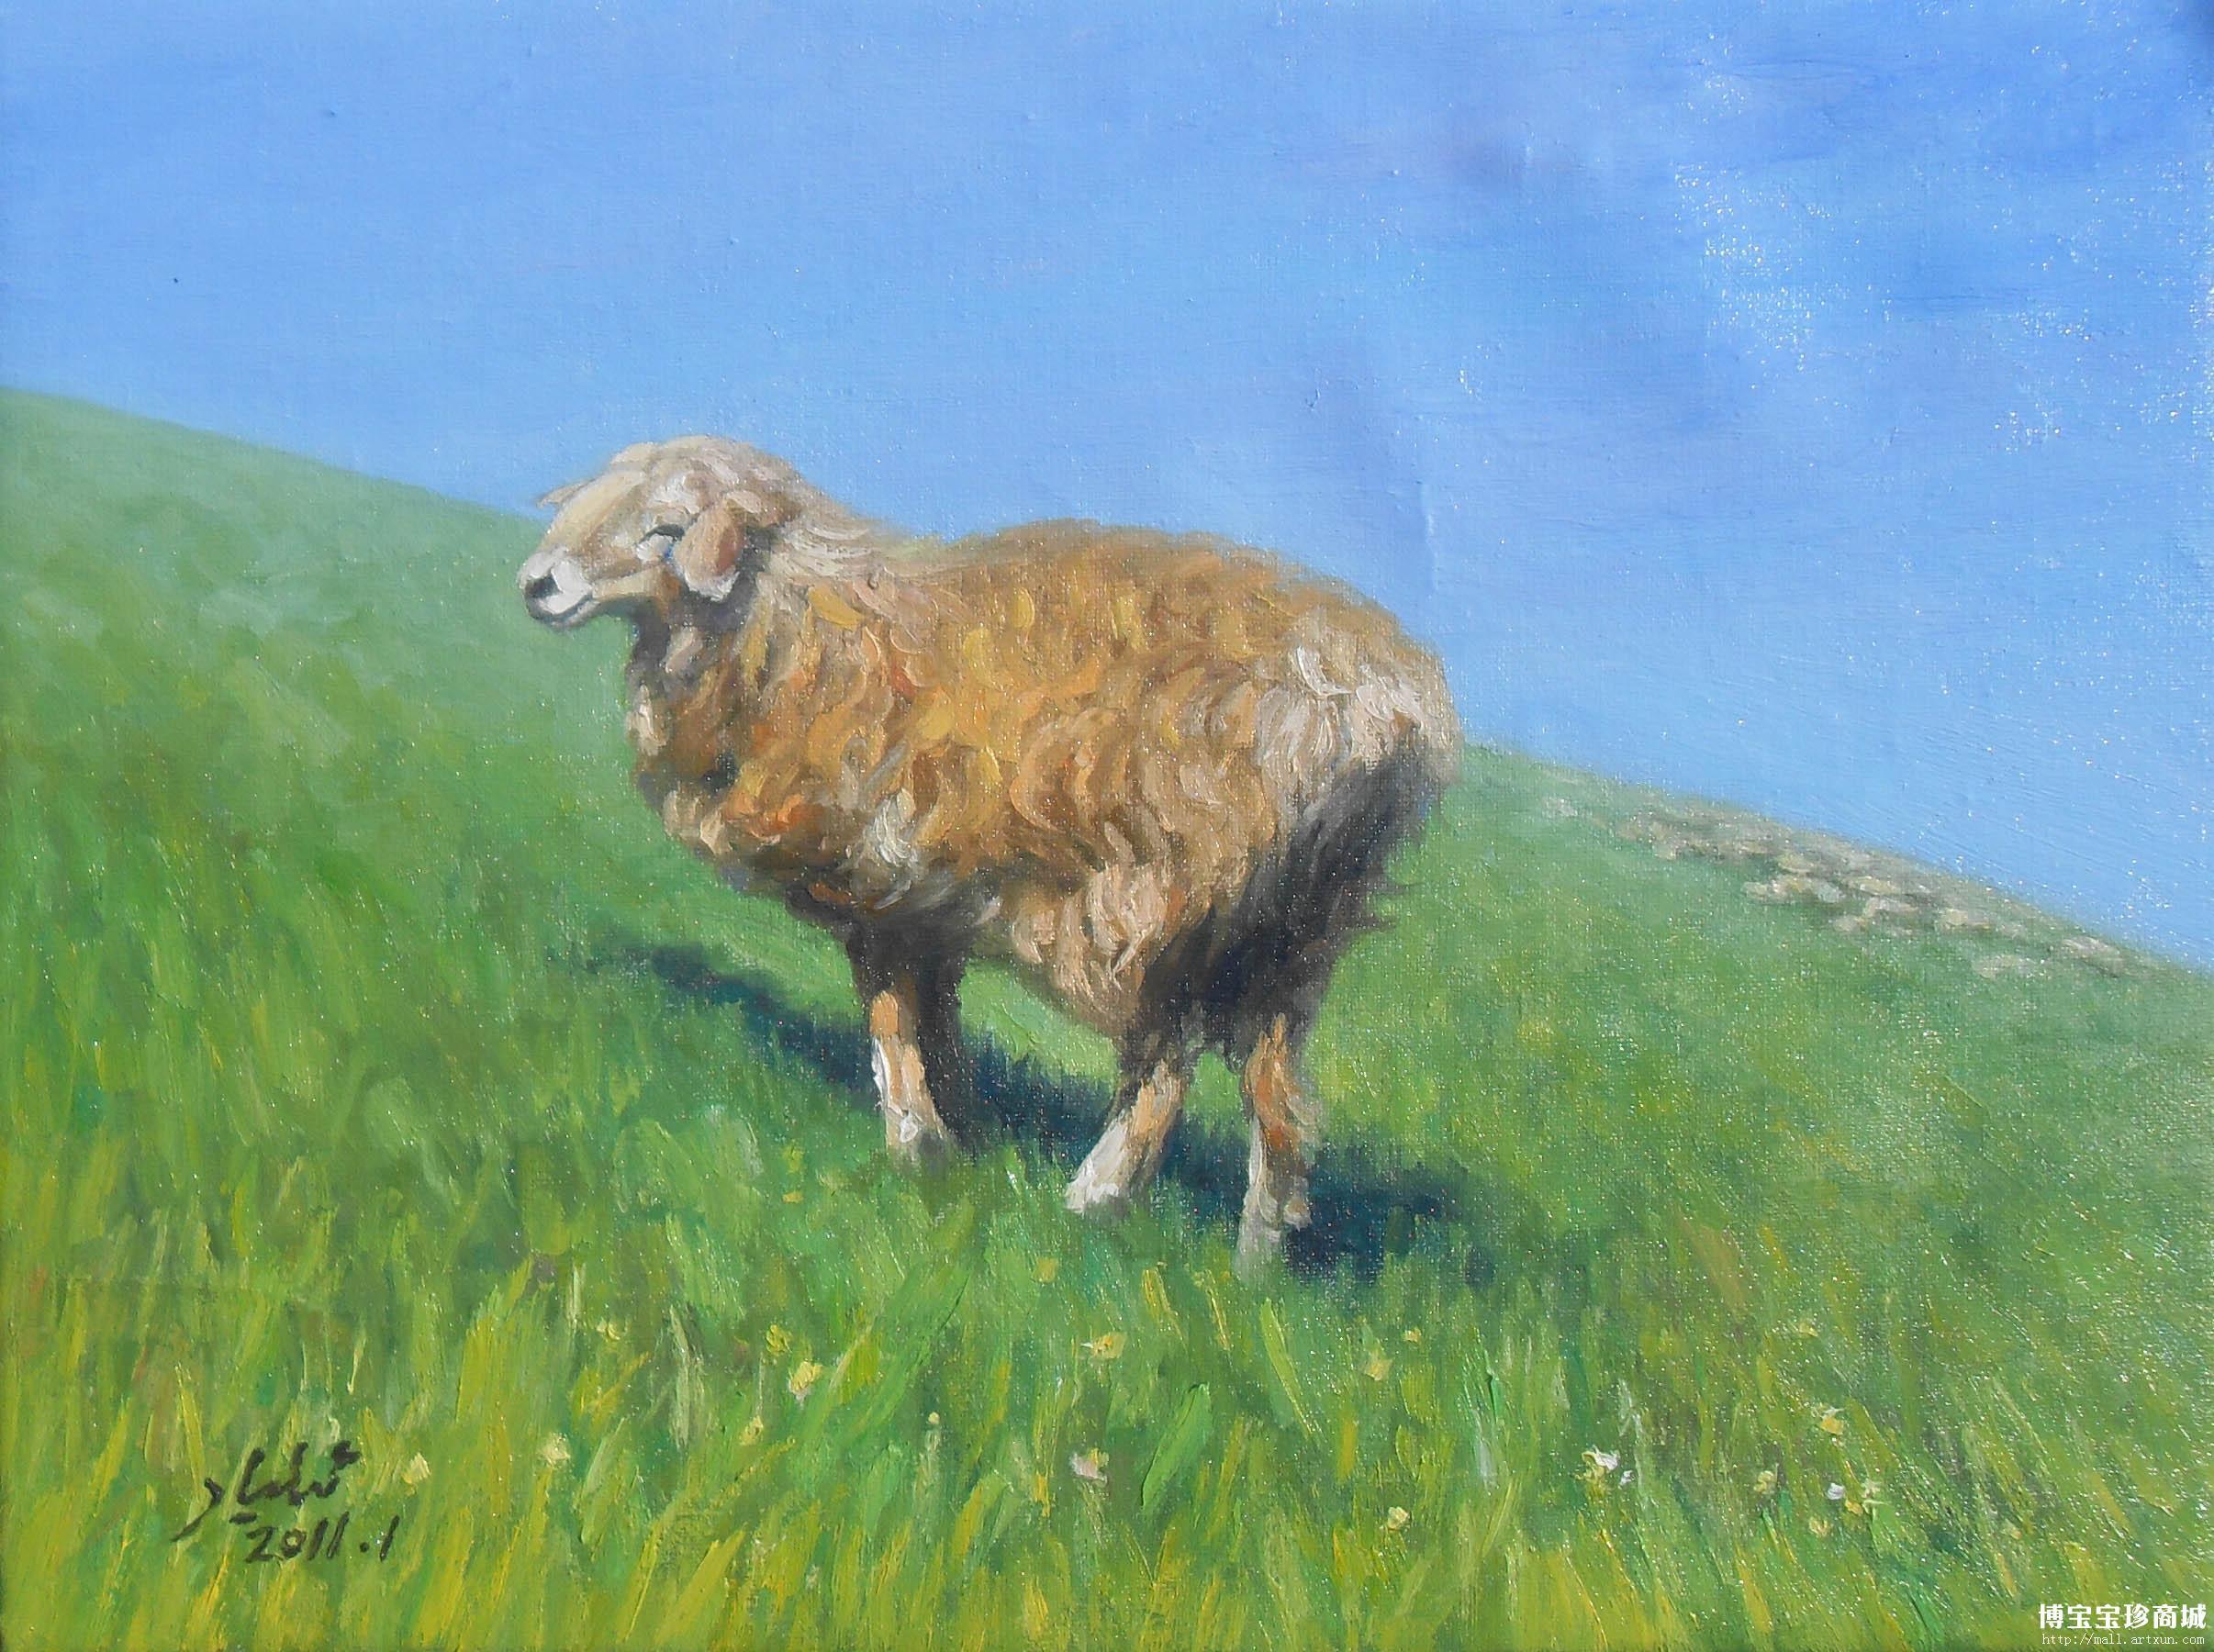 伊力亚尔.库尔班布面油画 描绘牛羊受收藏界关注